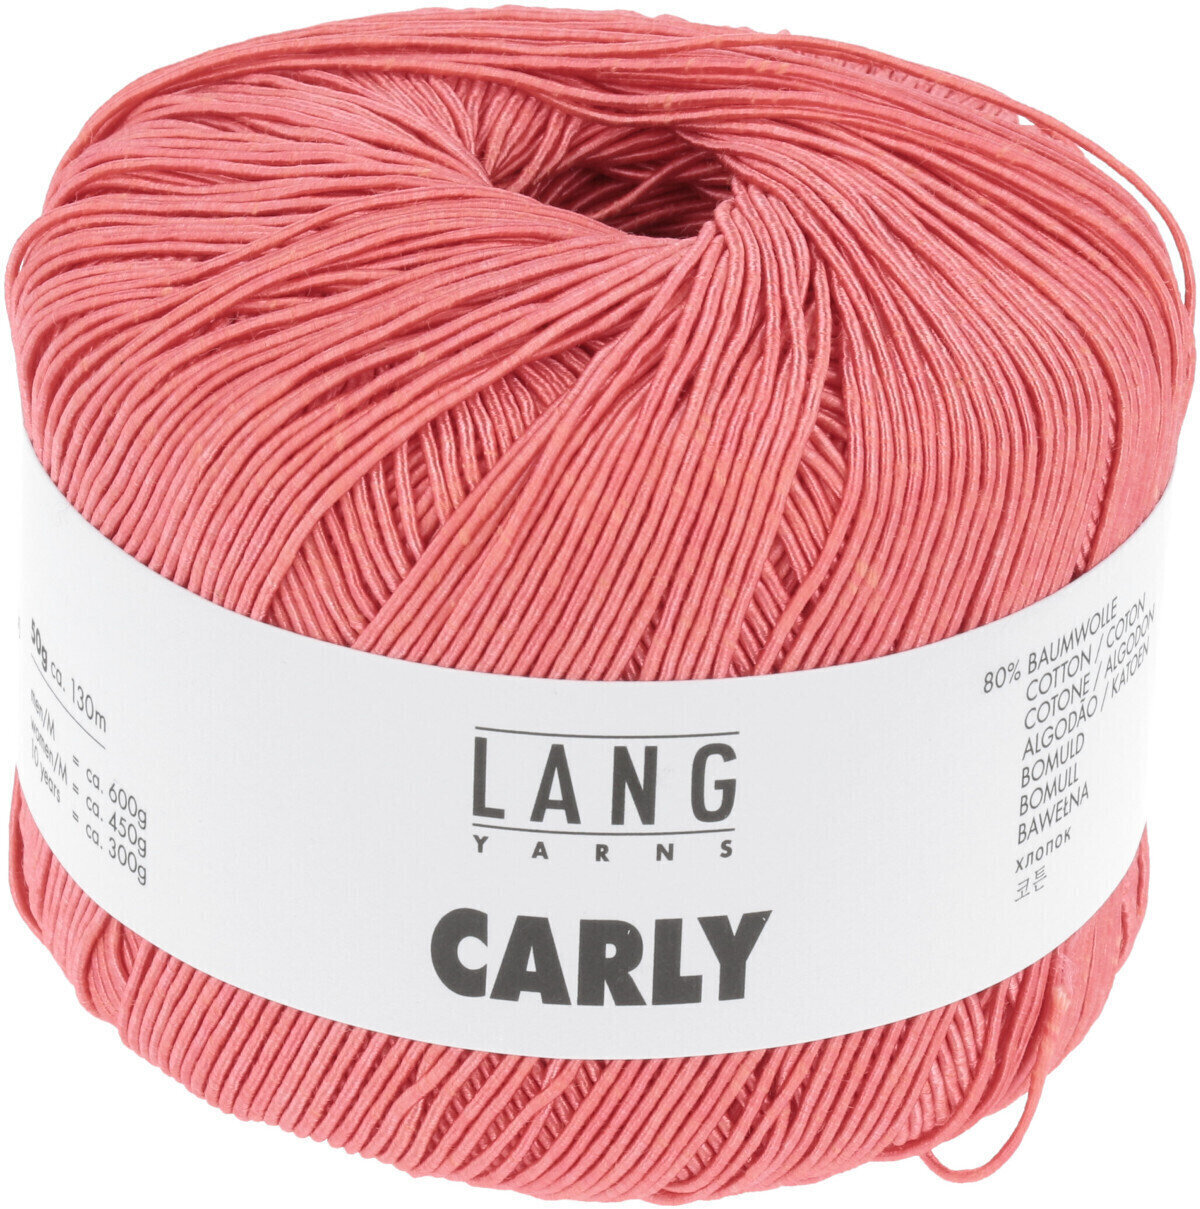 Strickgarn Lang Yarns Carly 0027 Coral